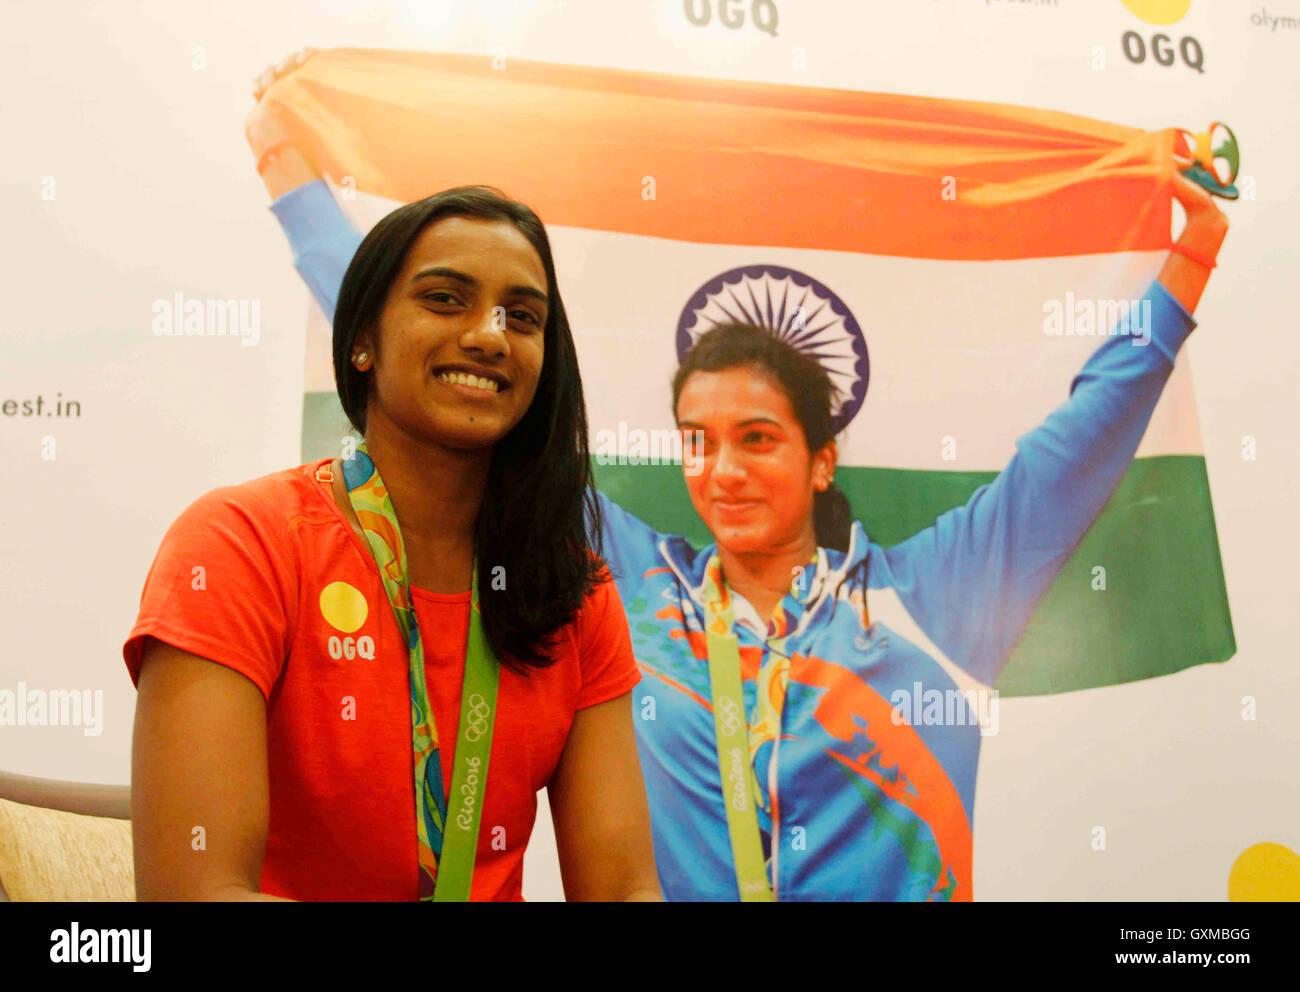 Indische Badmintonspielerin und Rio Olympia Silber Medallist P V Sindhu während die Glückwünsche Funktion organisiert OGQ Mumbai Stockfoto